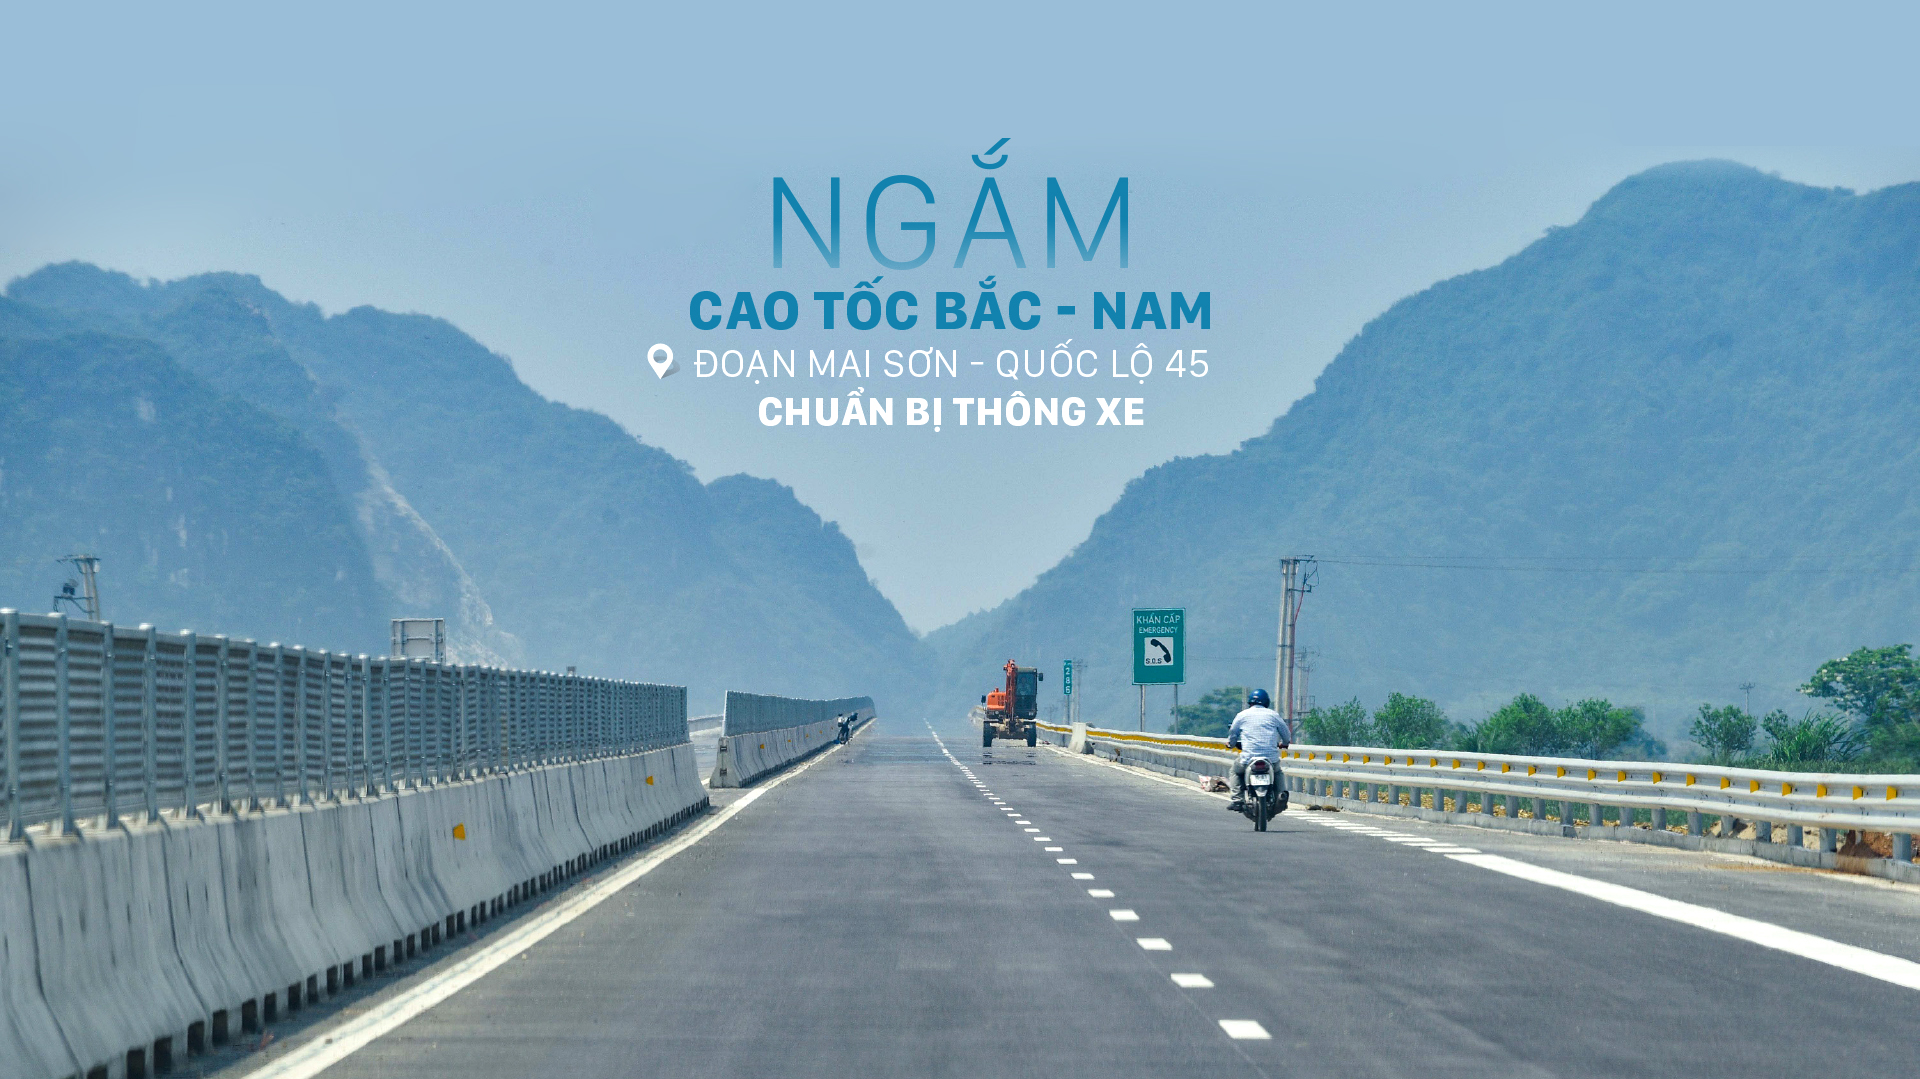 Ngắm cao tốc Bắc - Nam đoạn Mai Sơn - Quốc lộ 45 chuẩn bị thông xe